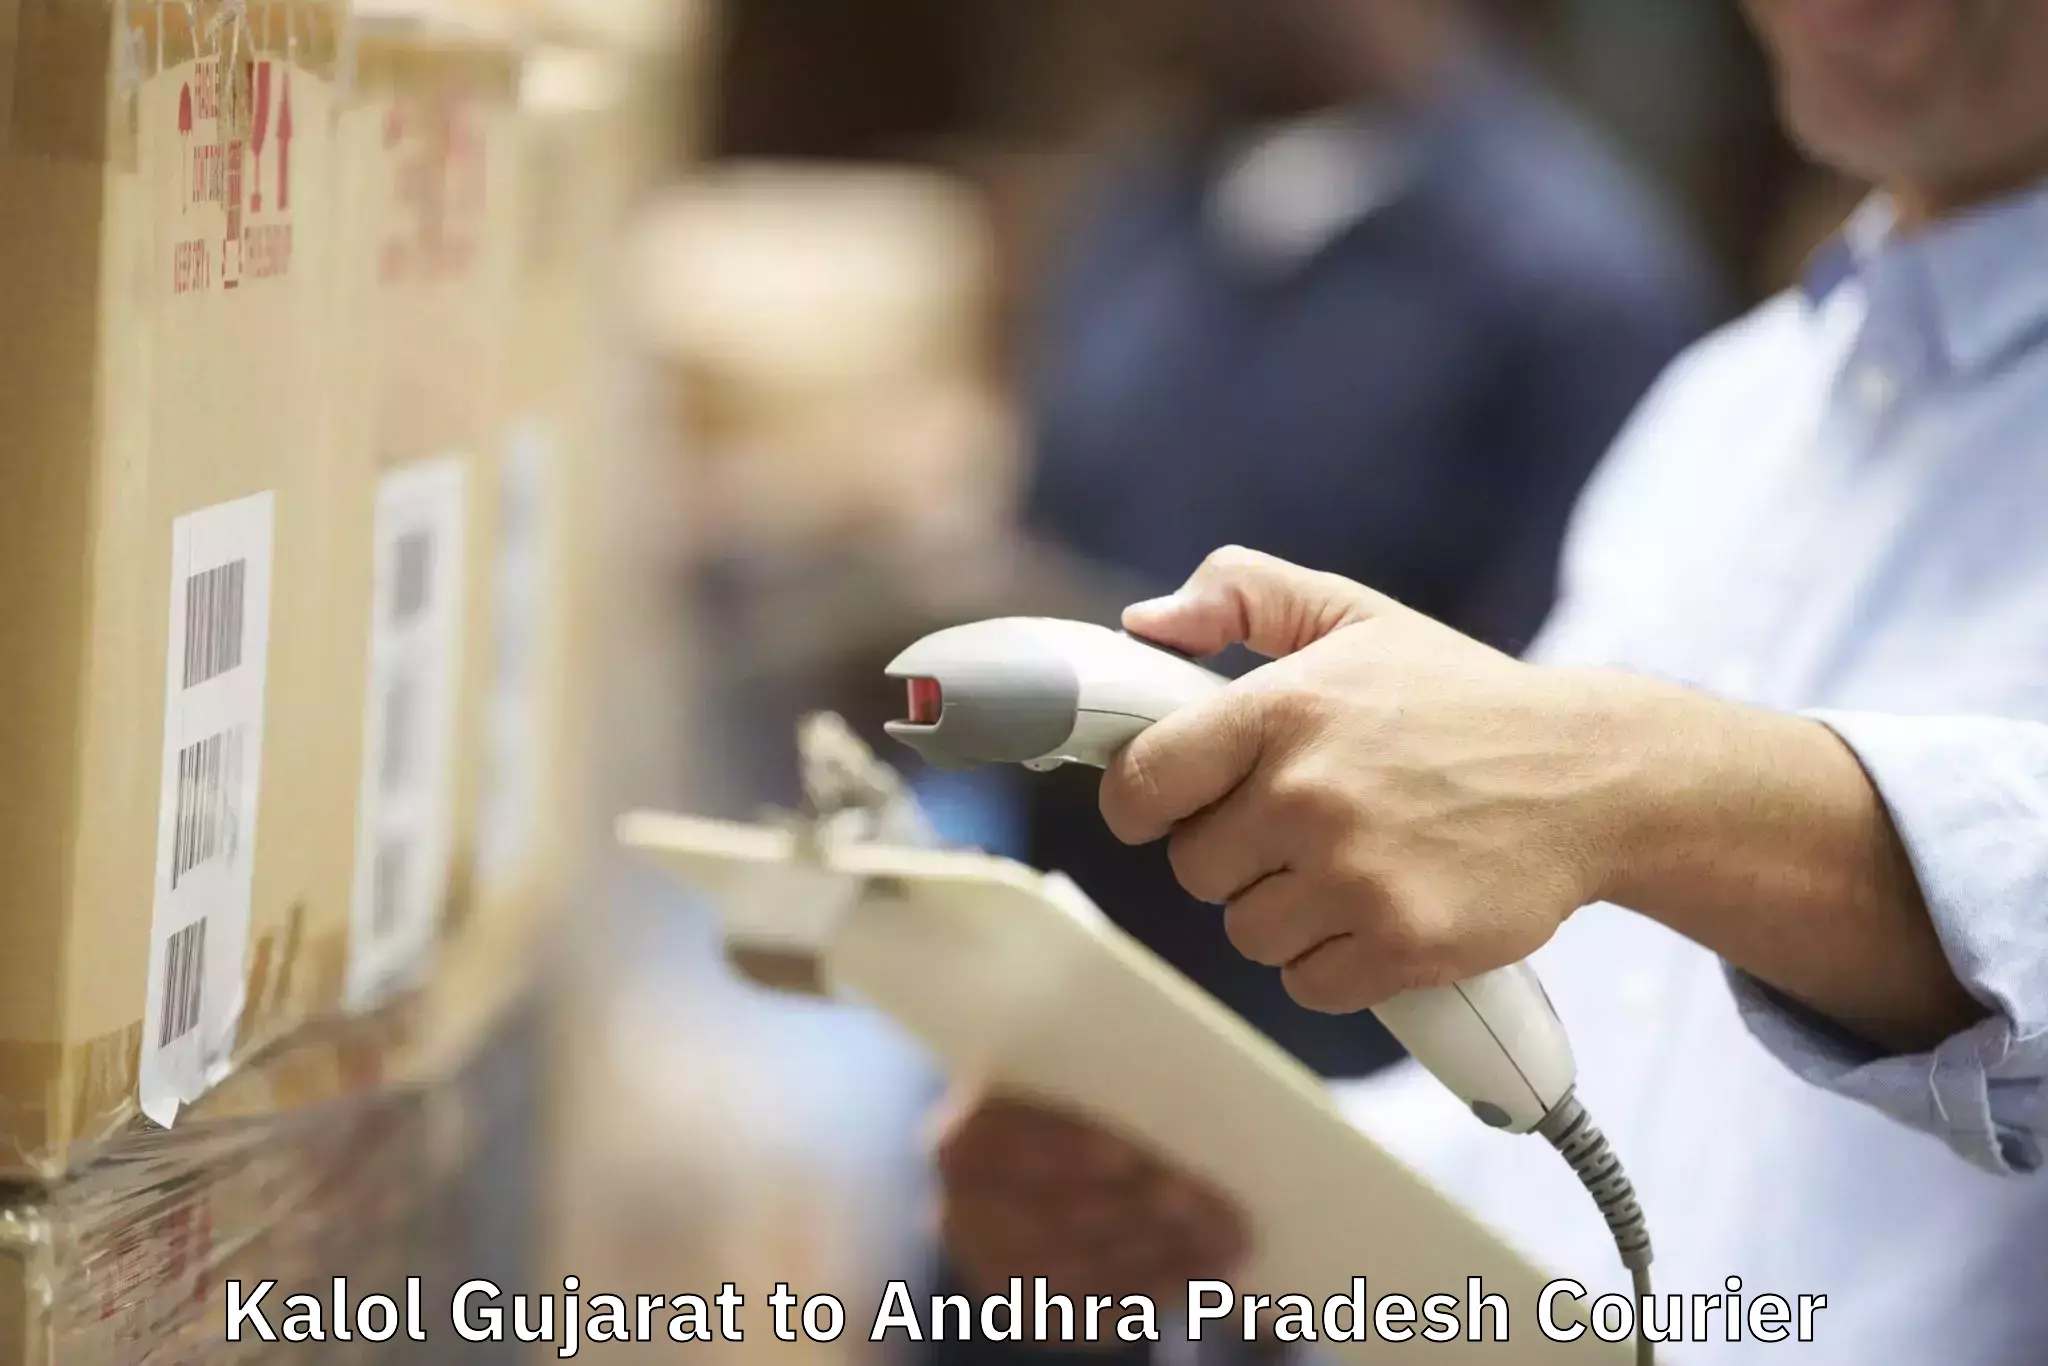 Furniture moving experts Kalol Gujarat to Andhra Pradesh